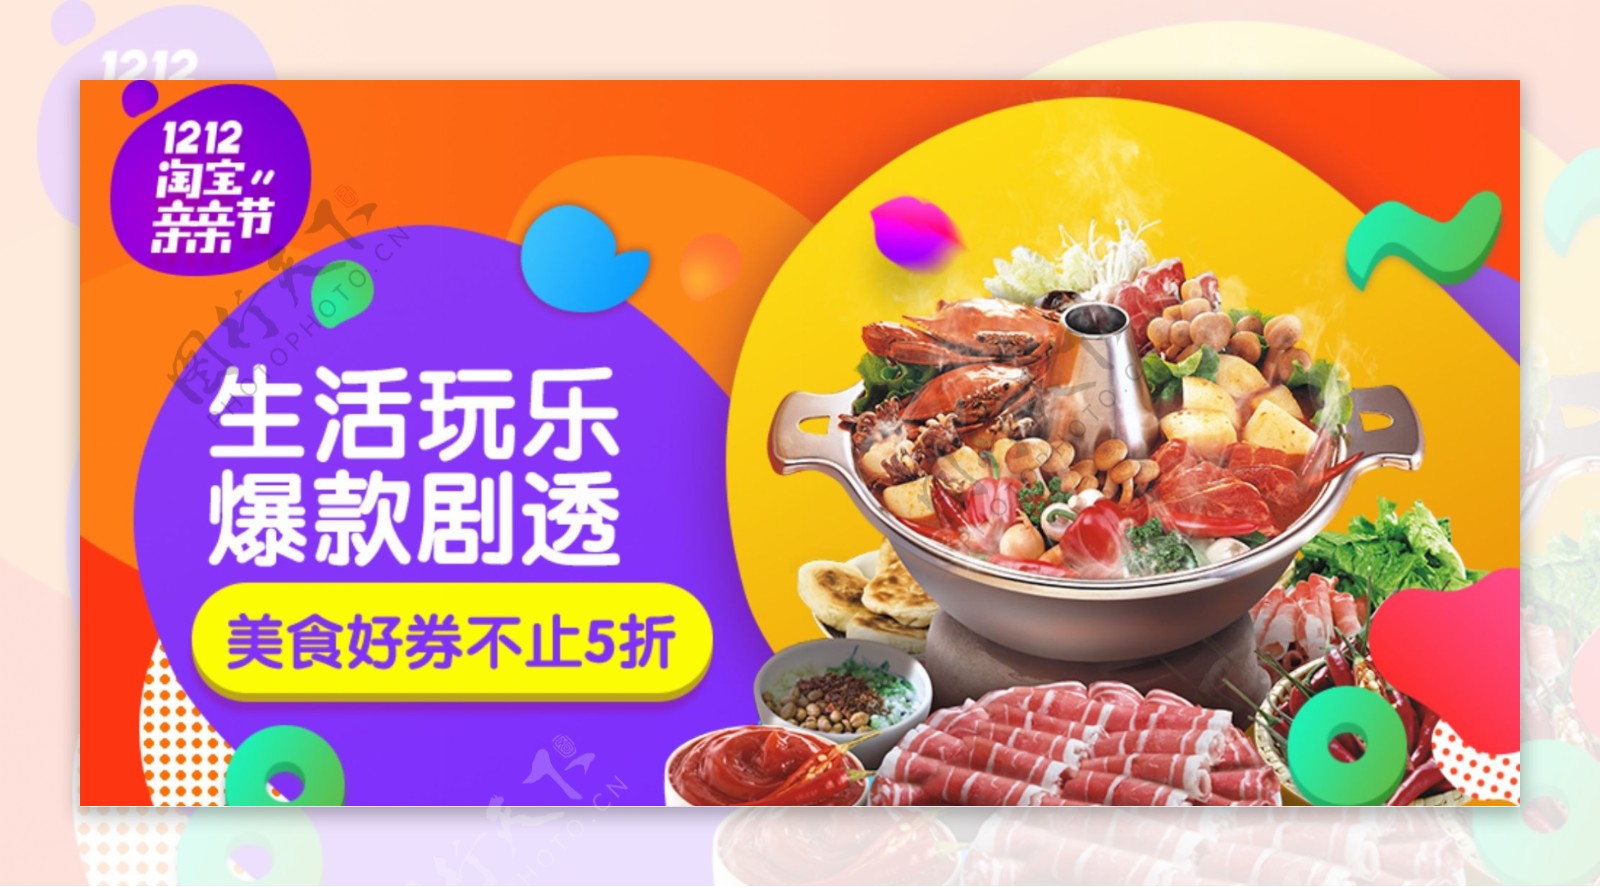 双十二淘宝火锅食材促销banner